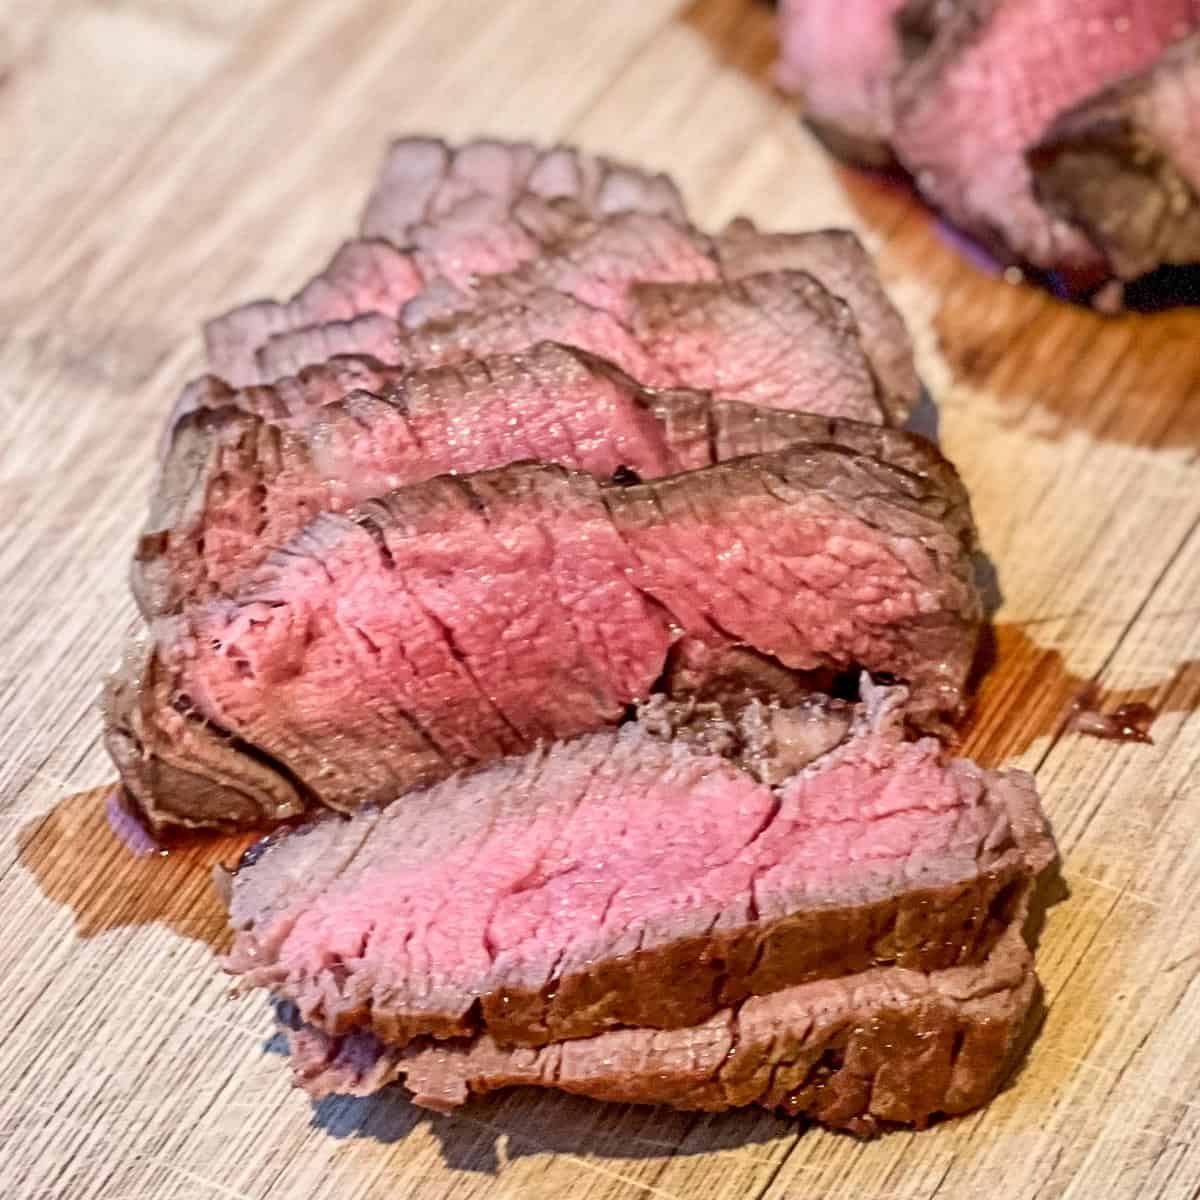 Filet Mignon steak sliced and showing perfect medium rare interior.